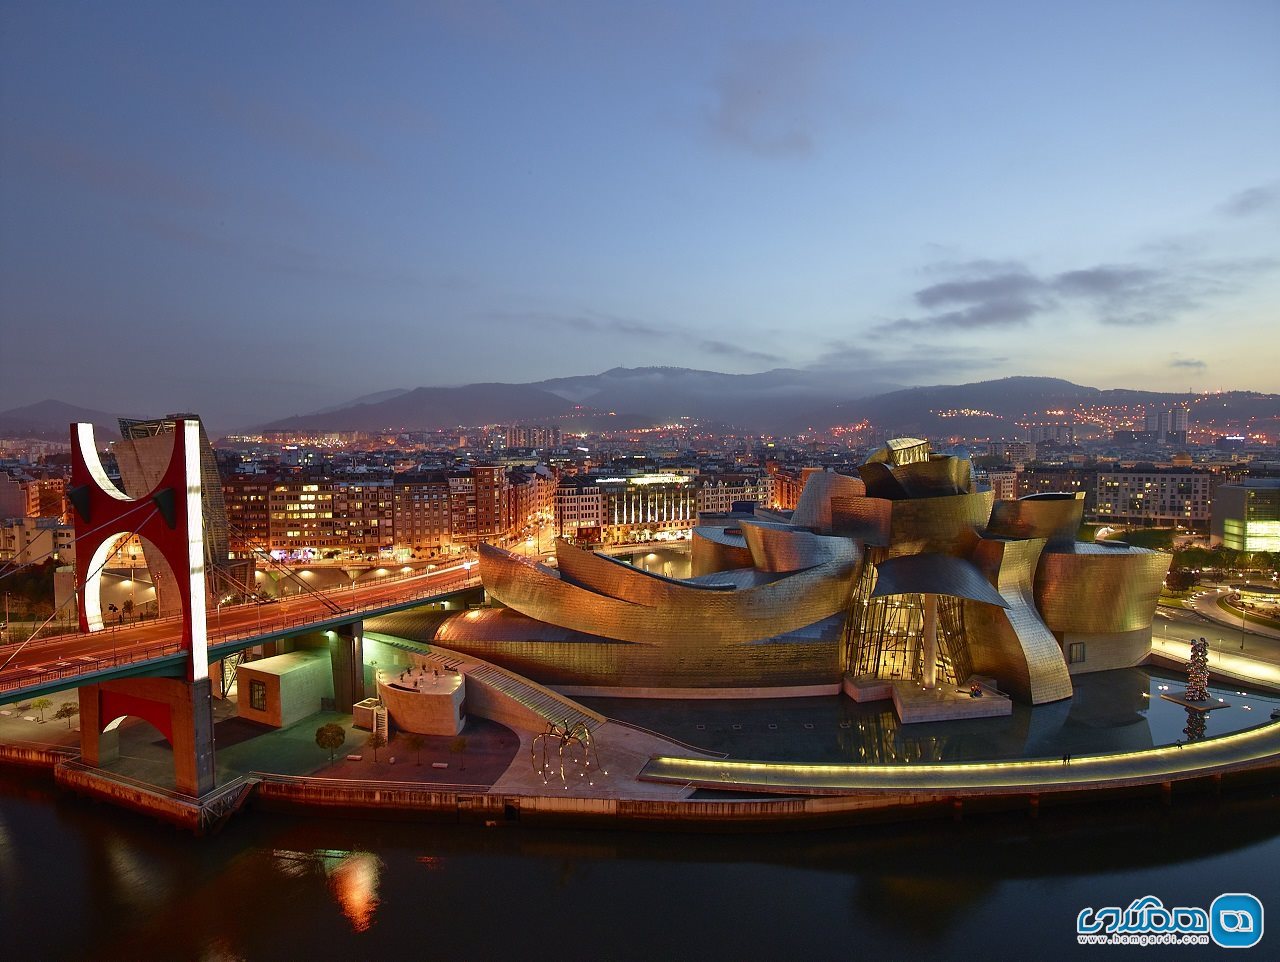 موزه گوگنهایم Guggenheim Museum در بیلبائو Bilbao، اسپانیا (1997)